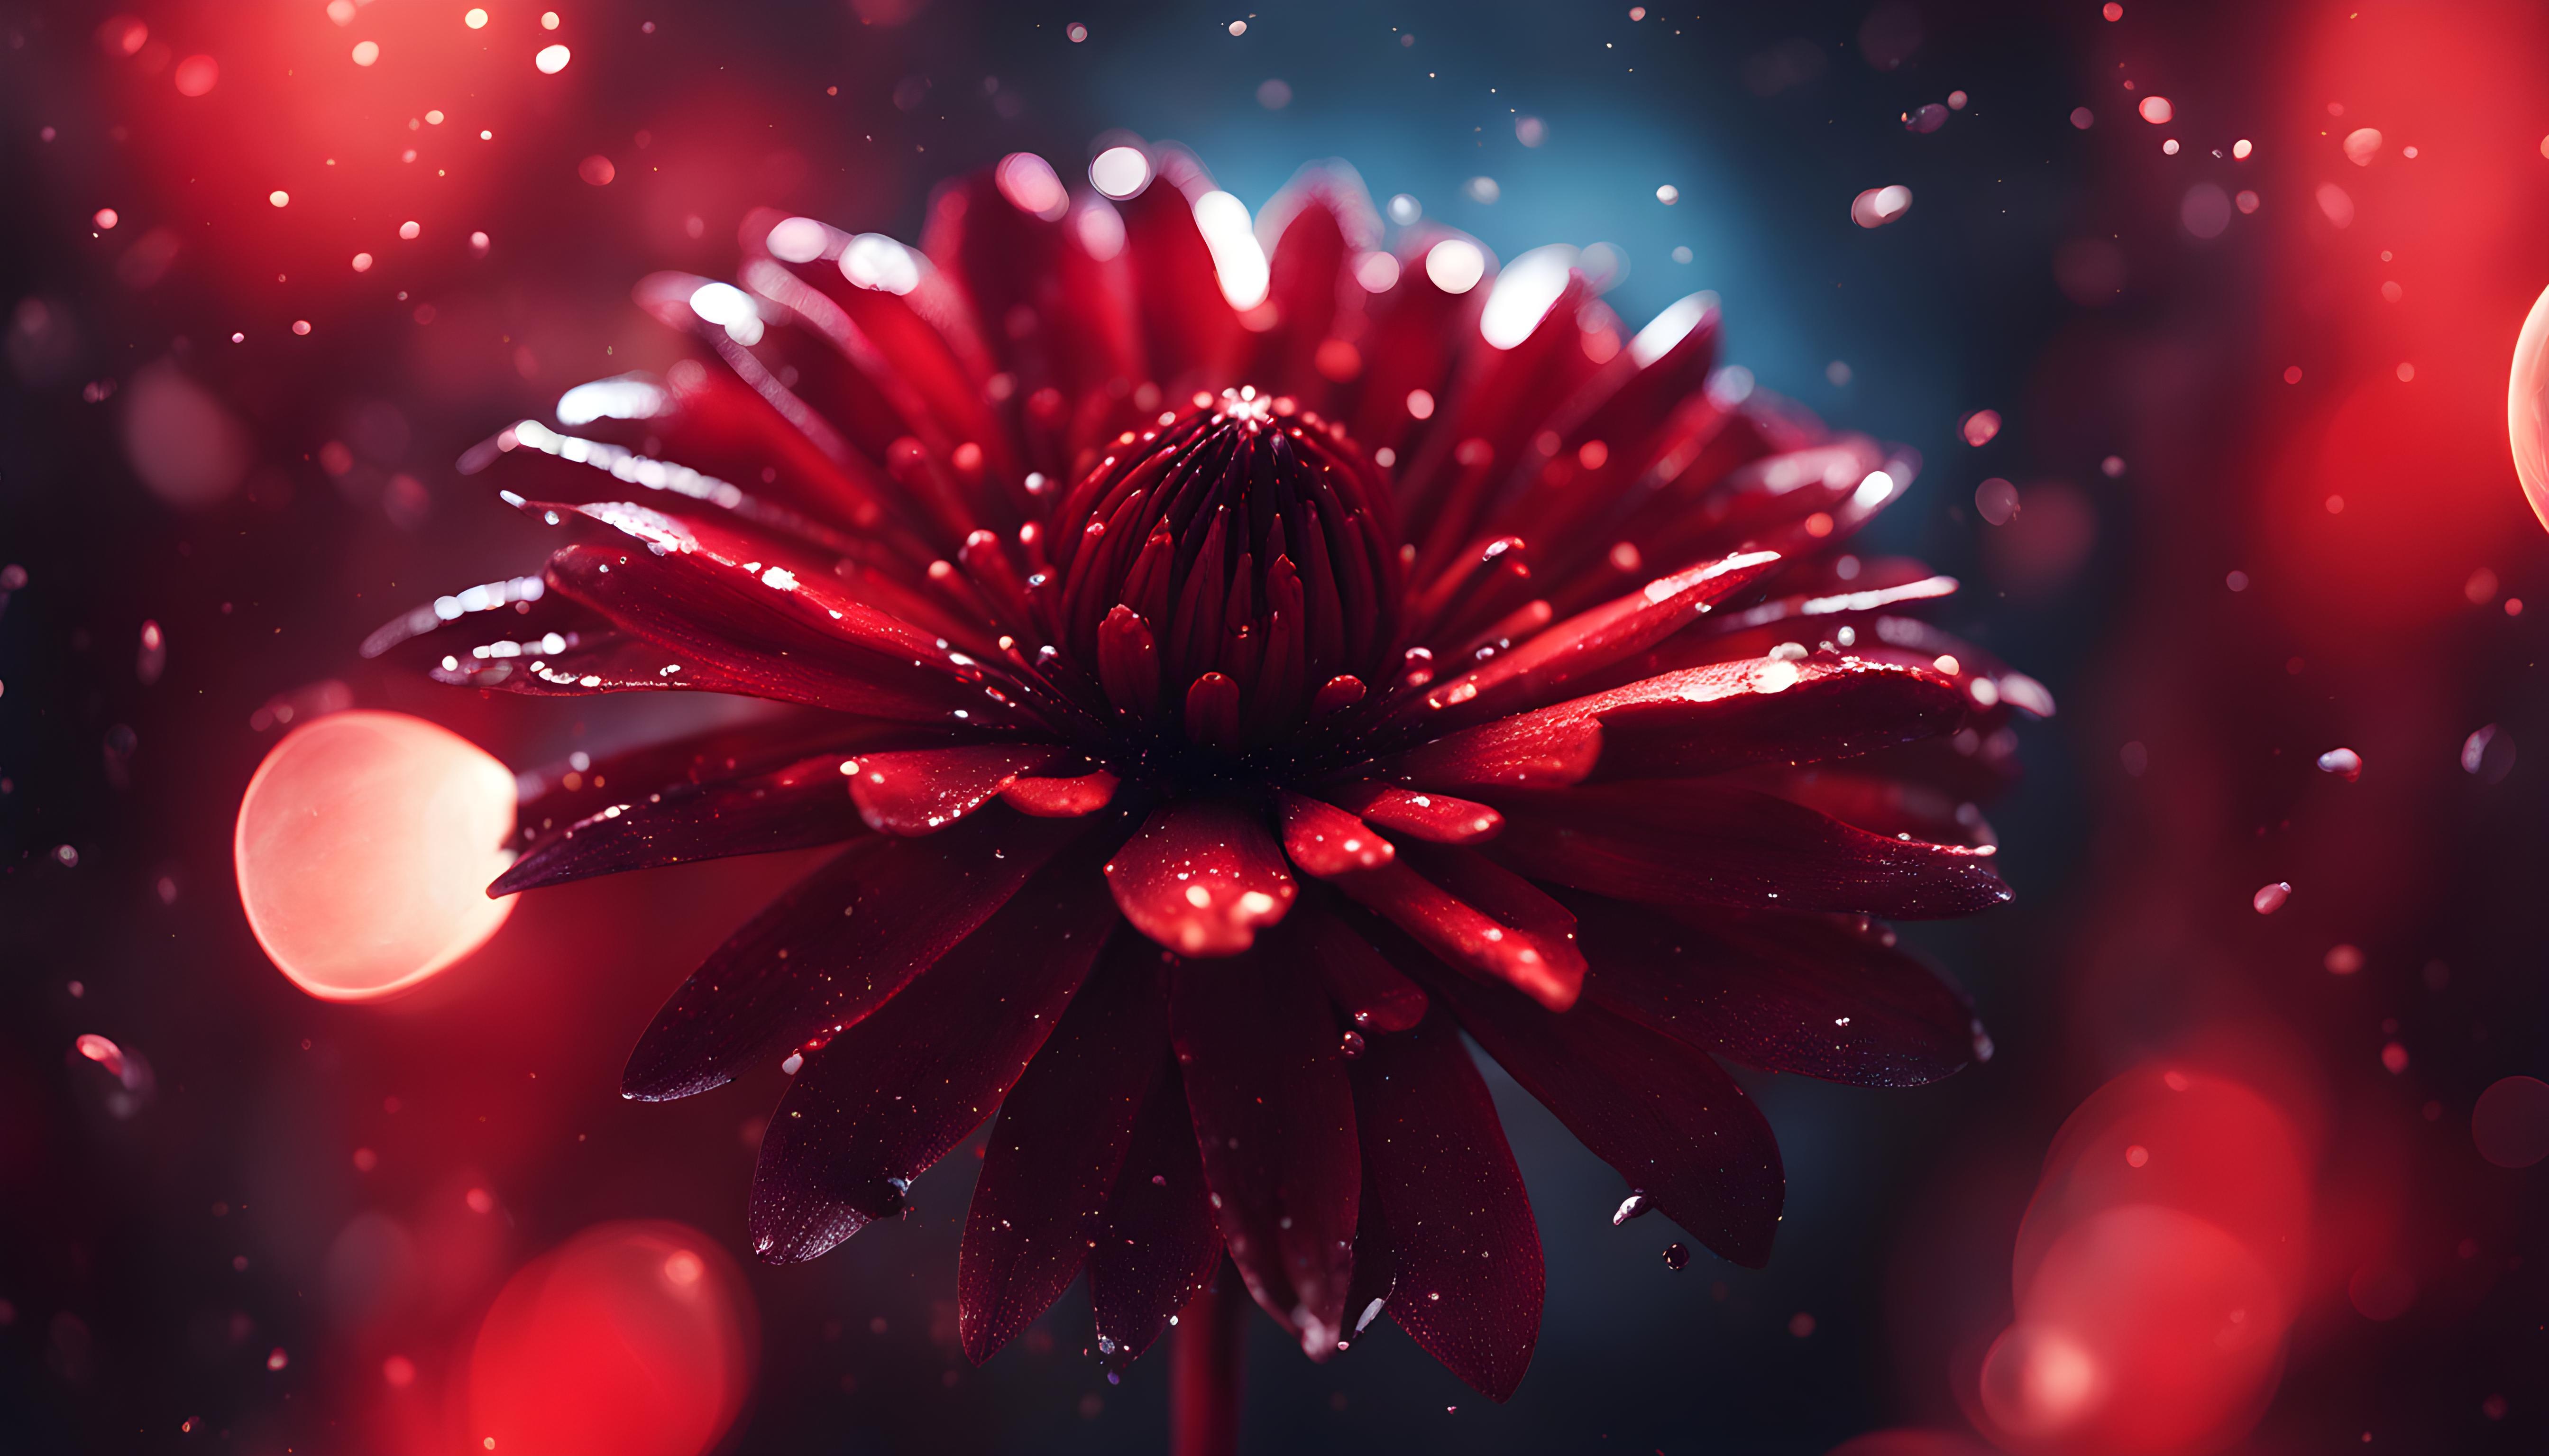 Nature Flower 4k Ultra HD Wallpaper